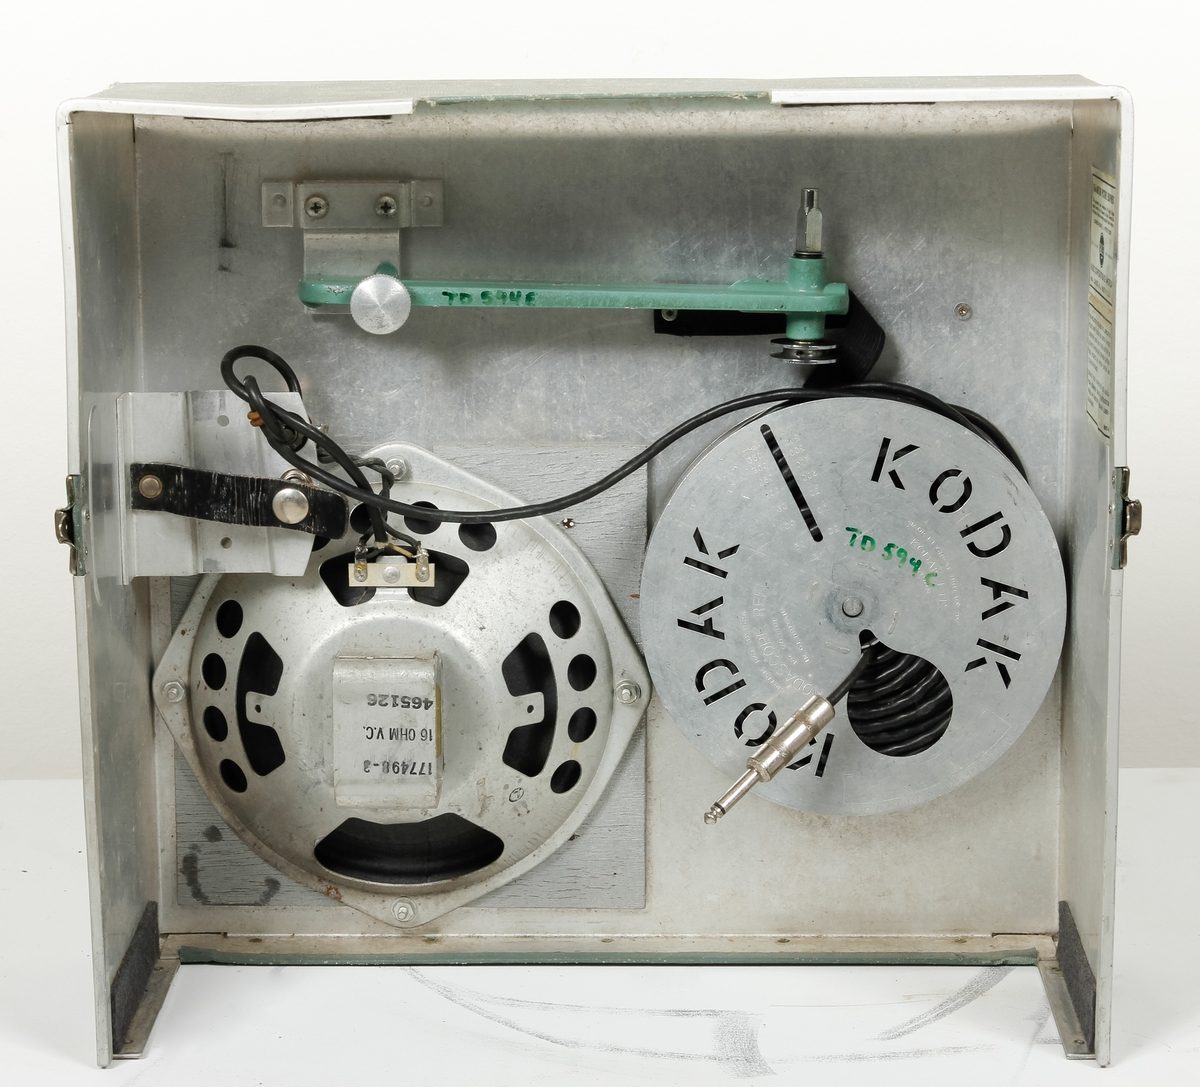 Filmkamera, RCA 415 med bruksanvisning.
